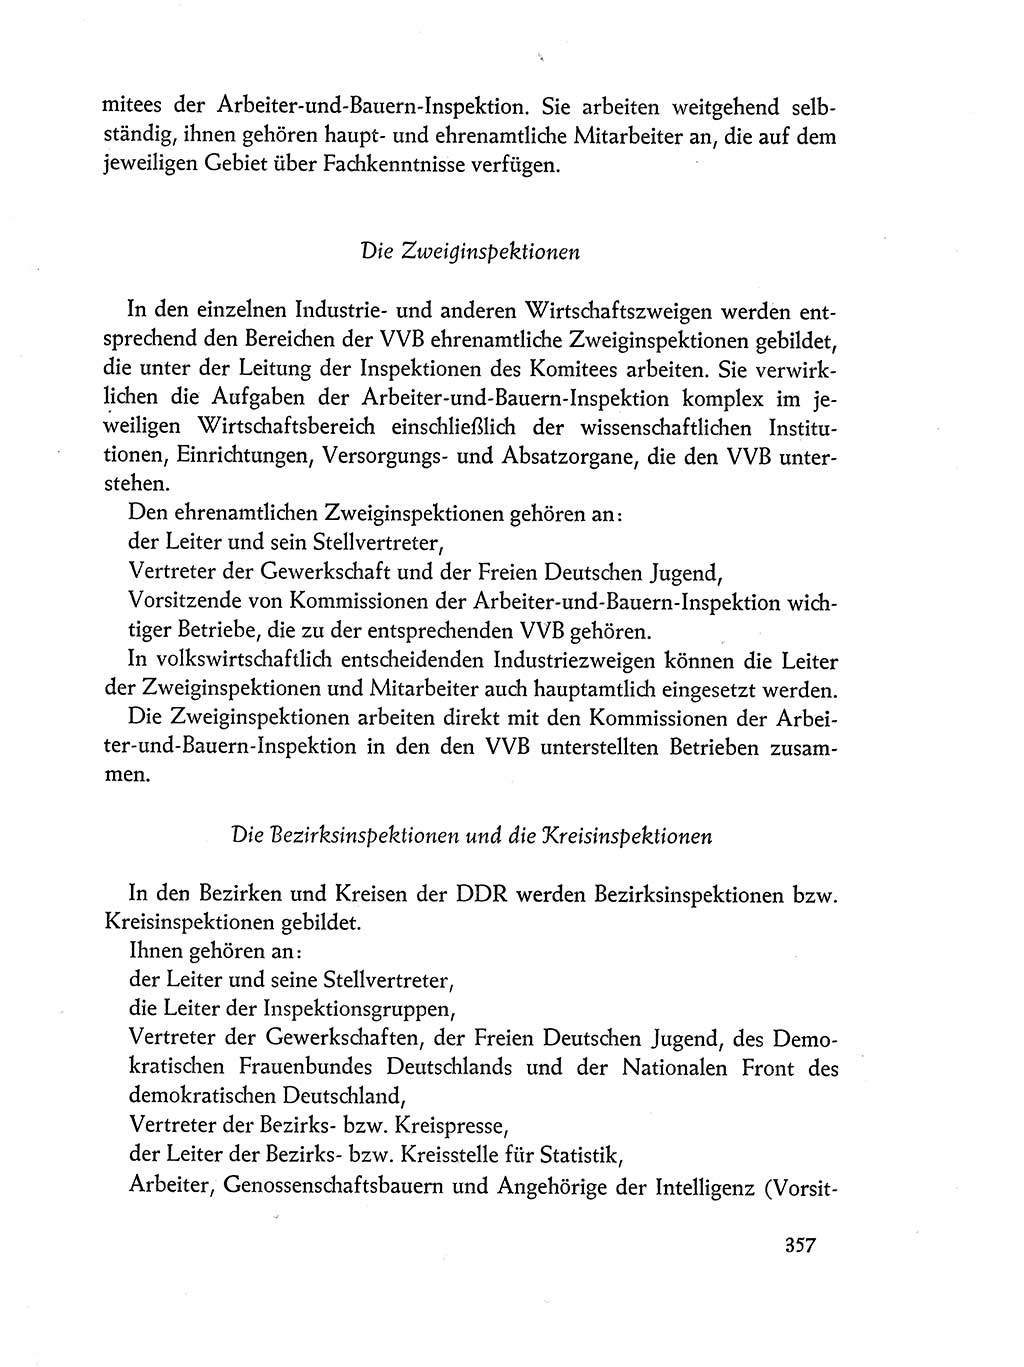 Dokumente der Sozialistischen Einheitspartei Deutschlands (SED) [Deutsche Demokratische Republik (DDR)] 1962-1963, Seite 357 (Dok. SED DDR 1962-1963, S. 357)